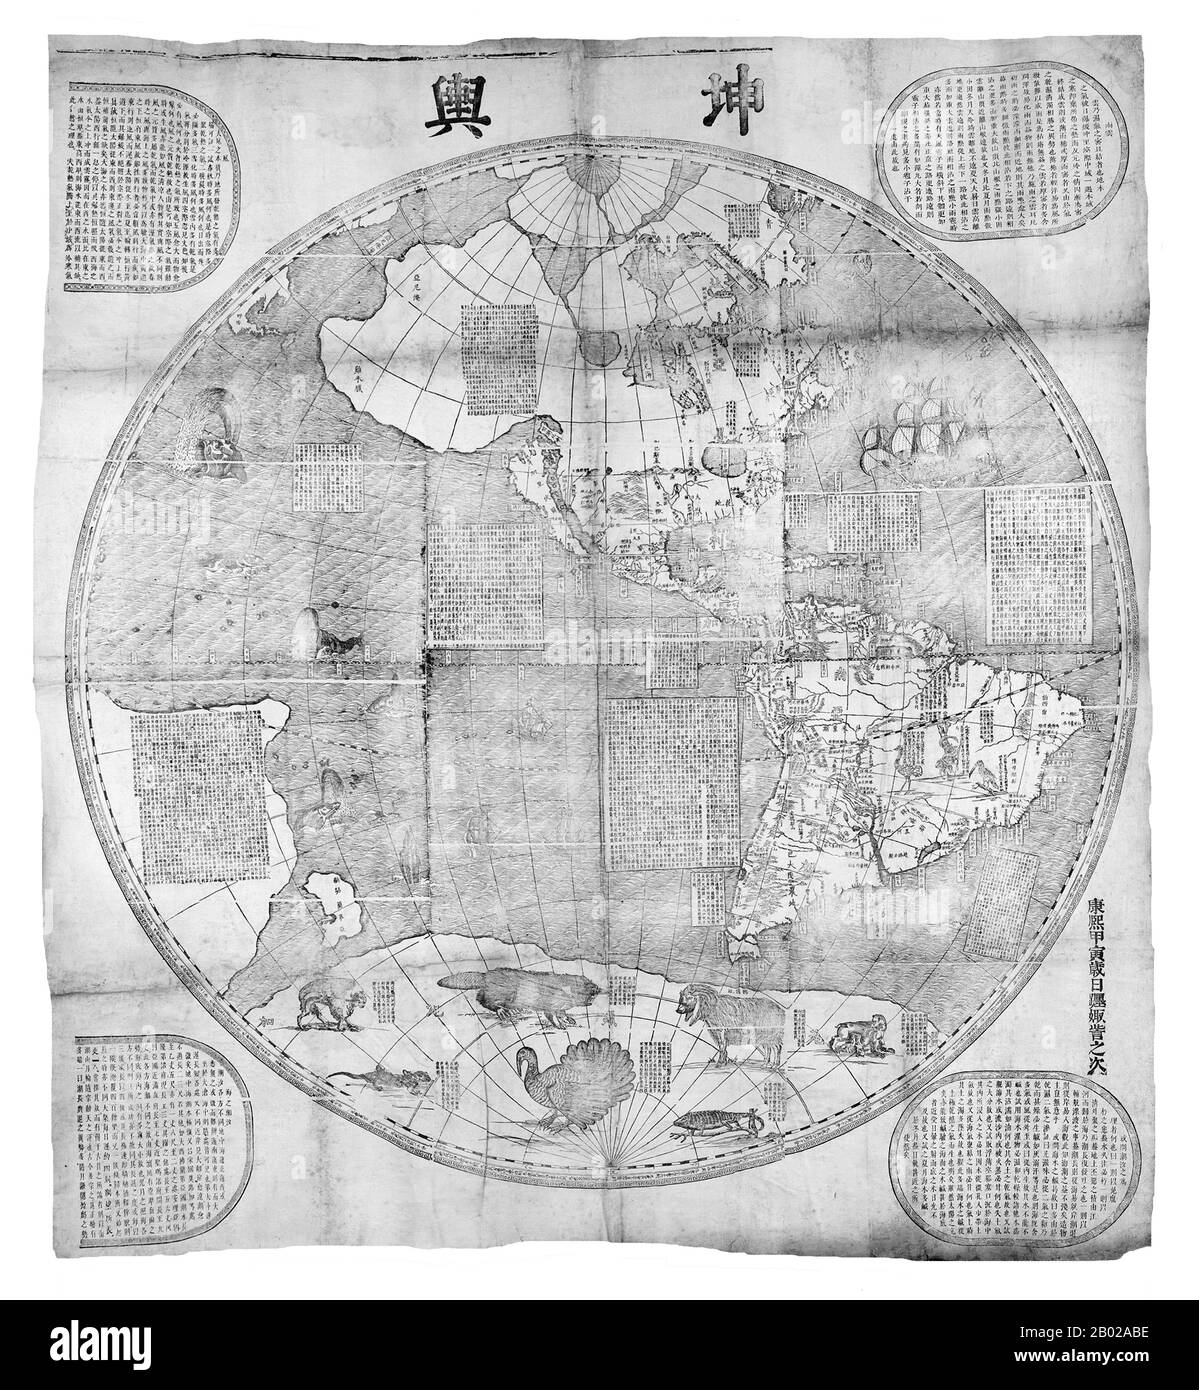 Diese Karte mit den beiden Hemisphären der Welt wurde 1674 vom Jesuit Ferdinand Verbiest (1623-88) für den 2. Qing-Kaiser Kangxi (1662-1722) angefertigt. Verbiest war einer von wenigen Jesuiten, die während der Zeit am chinesischen Hof beschäftigt waren. Die Karte wurde aus Holzblöcken mit Mercators Projektion gedruckt und war Teil eines größeren geographischen Werks namens Kunyu tushuo (Illustrierte Diskussion über die Geographie der Welt) und hieß: Kunyu wanguo quantu (EINE Karte der Unzähligen Länder der Welt). Es war eine von einer Reihe von Karten, die von den Jesuiten am Hof in Peking erstellt wurden, beginnend mit M Stockfoto